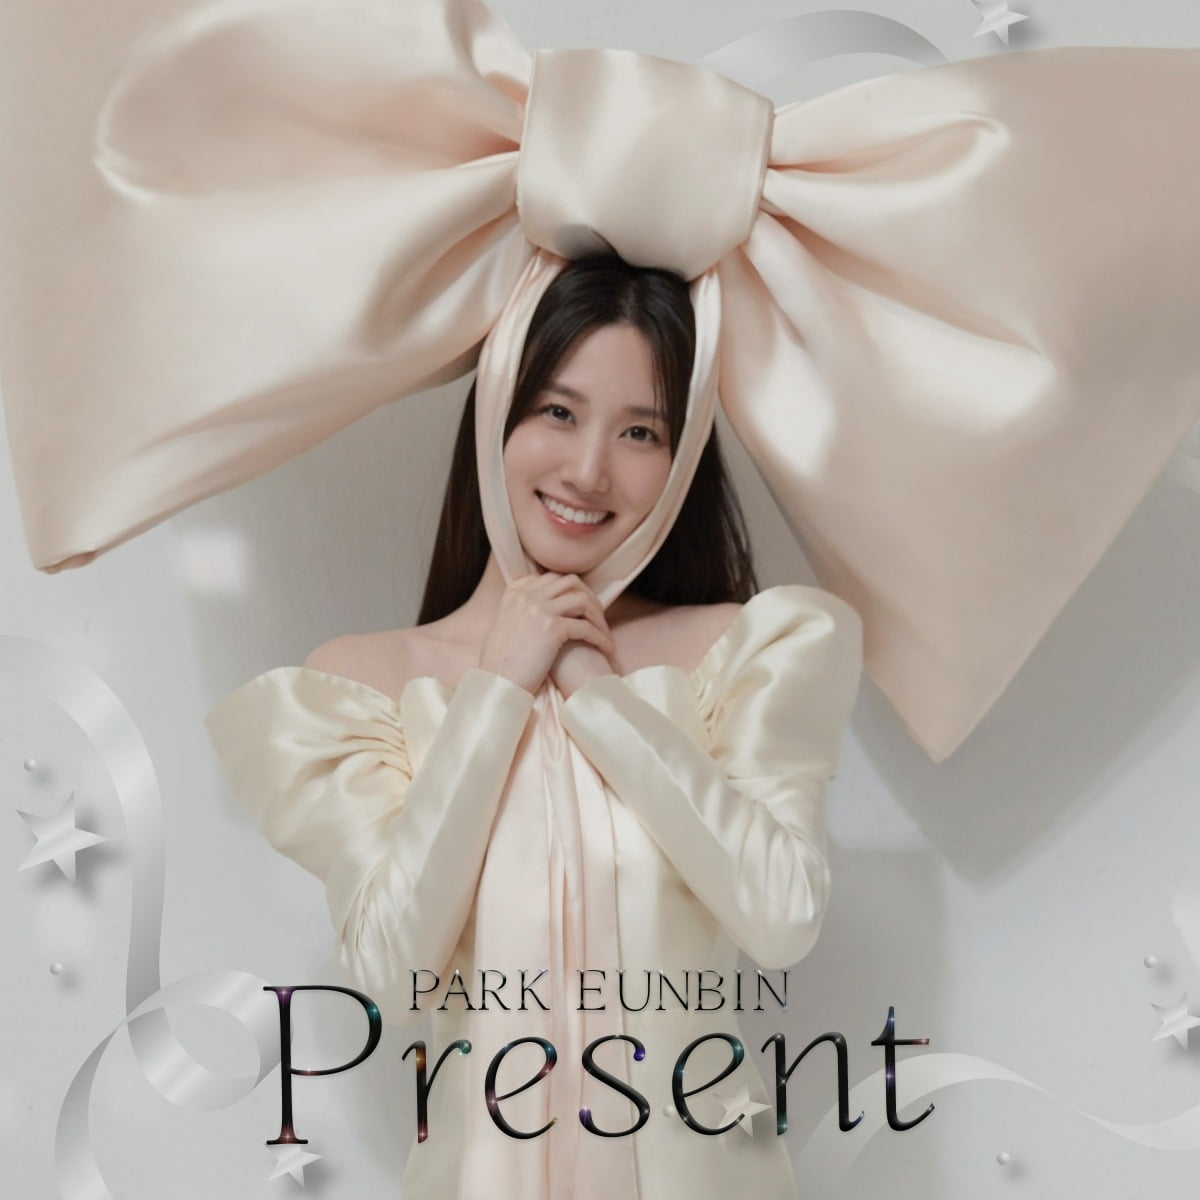 Eunbin Park surprise single album release